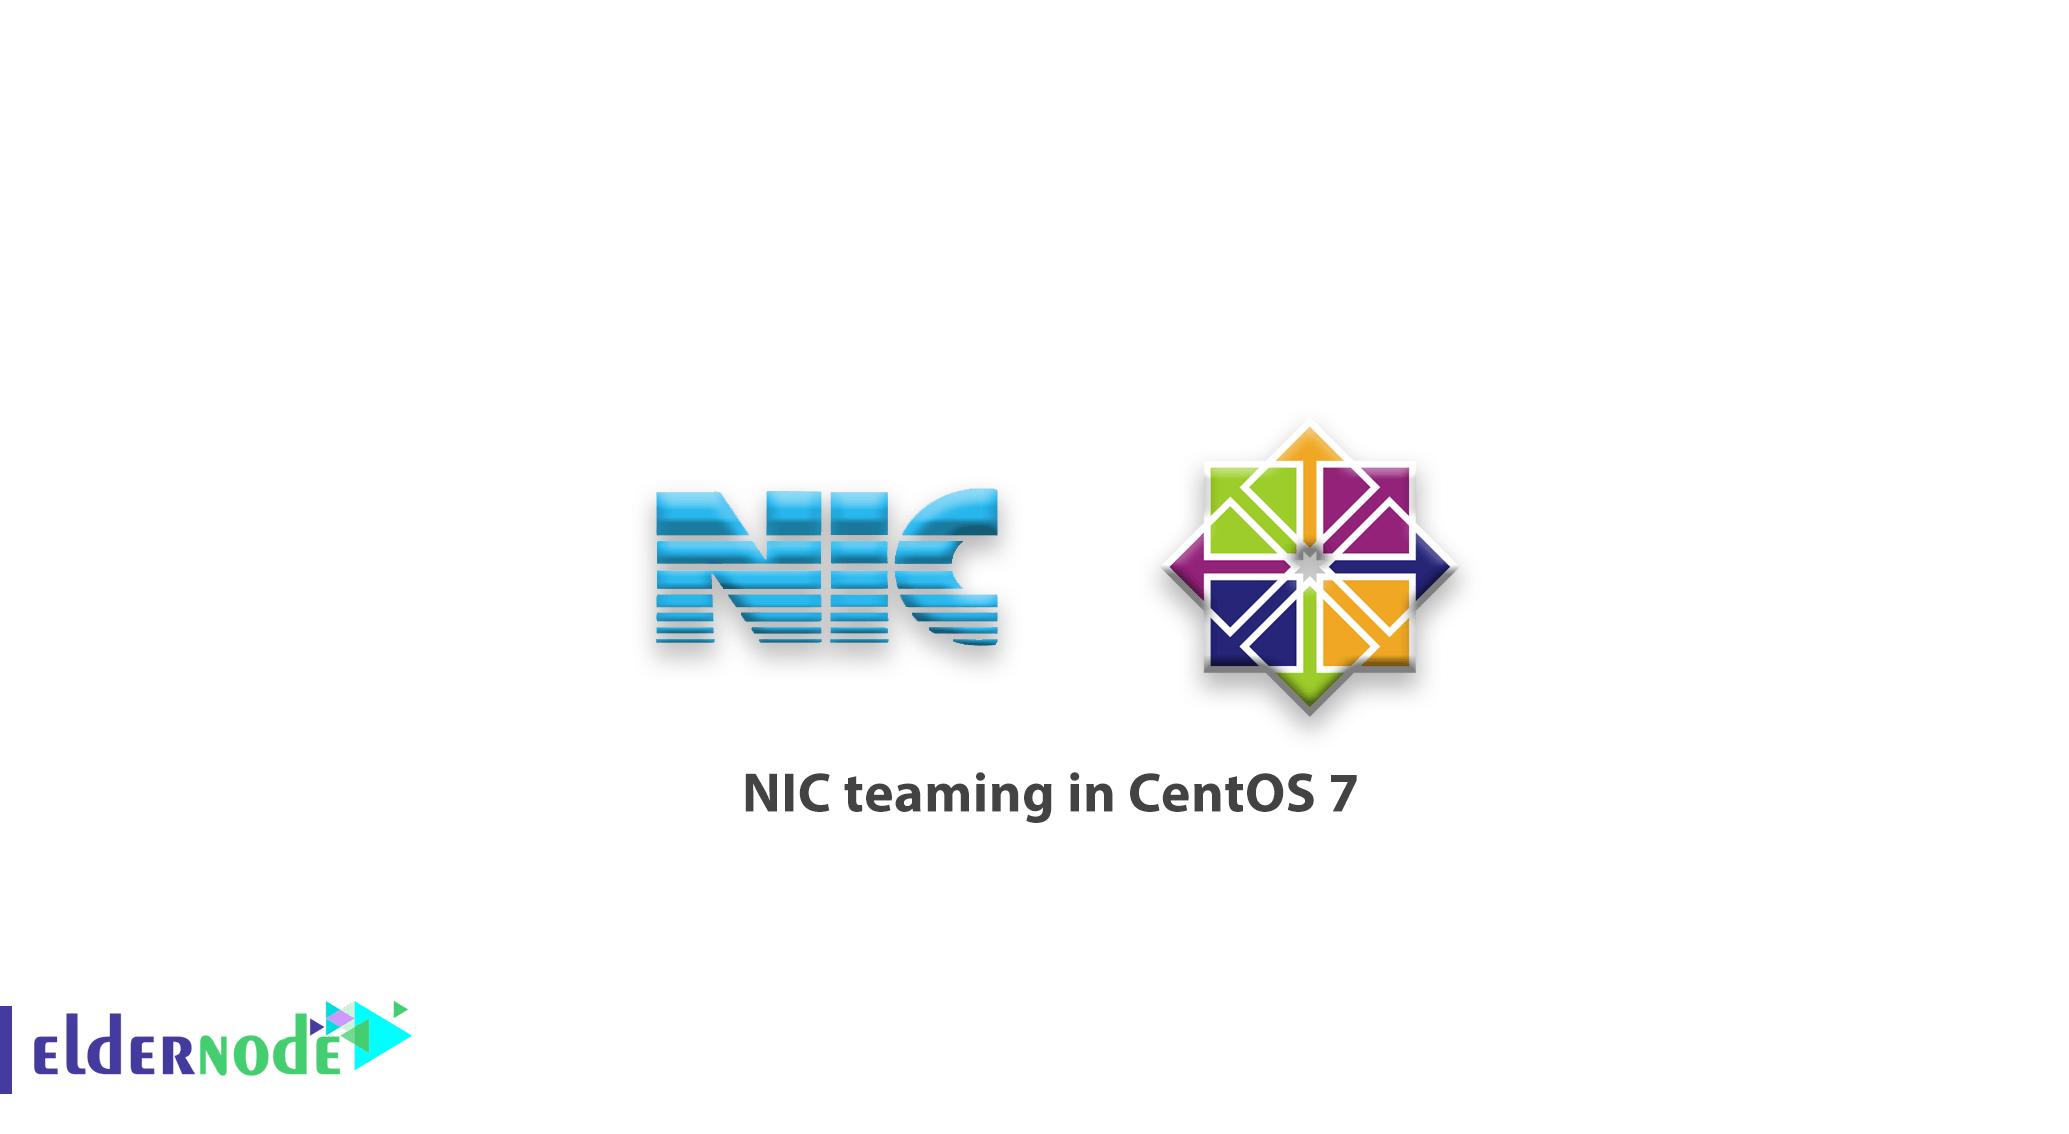 NIC teaming in CentOS 7